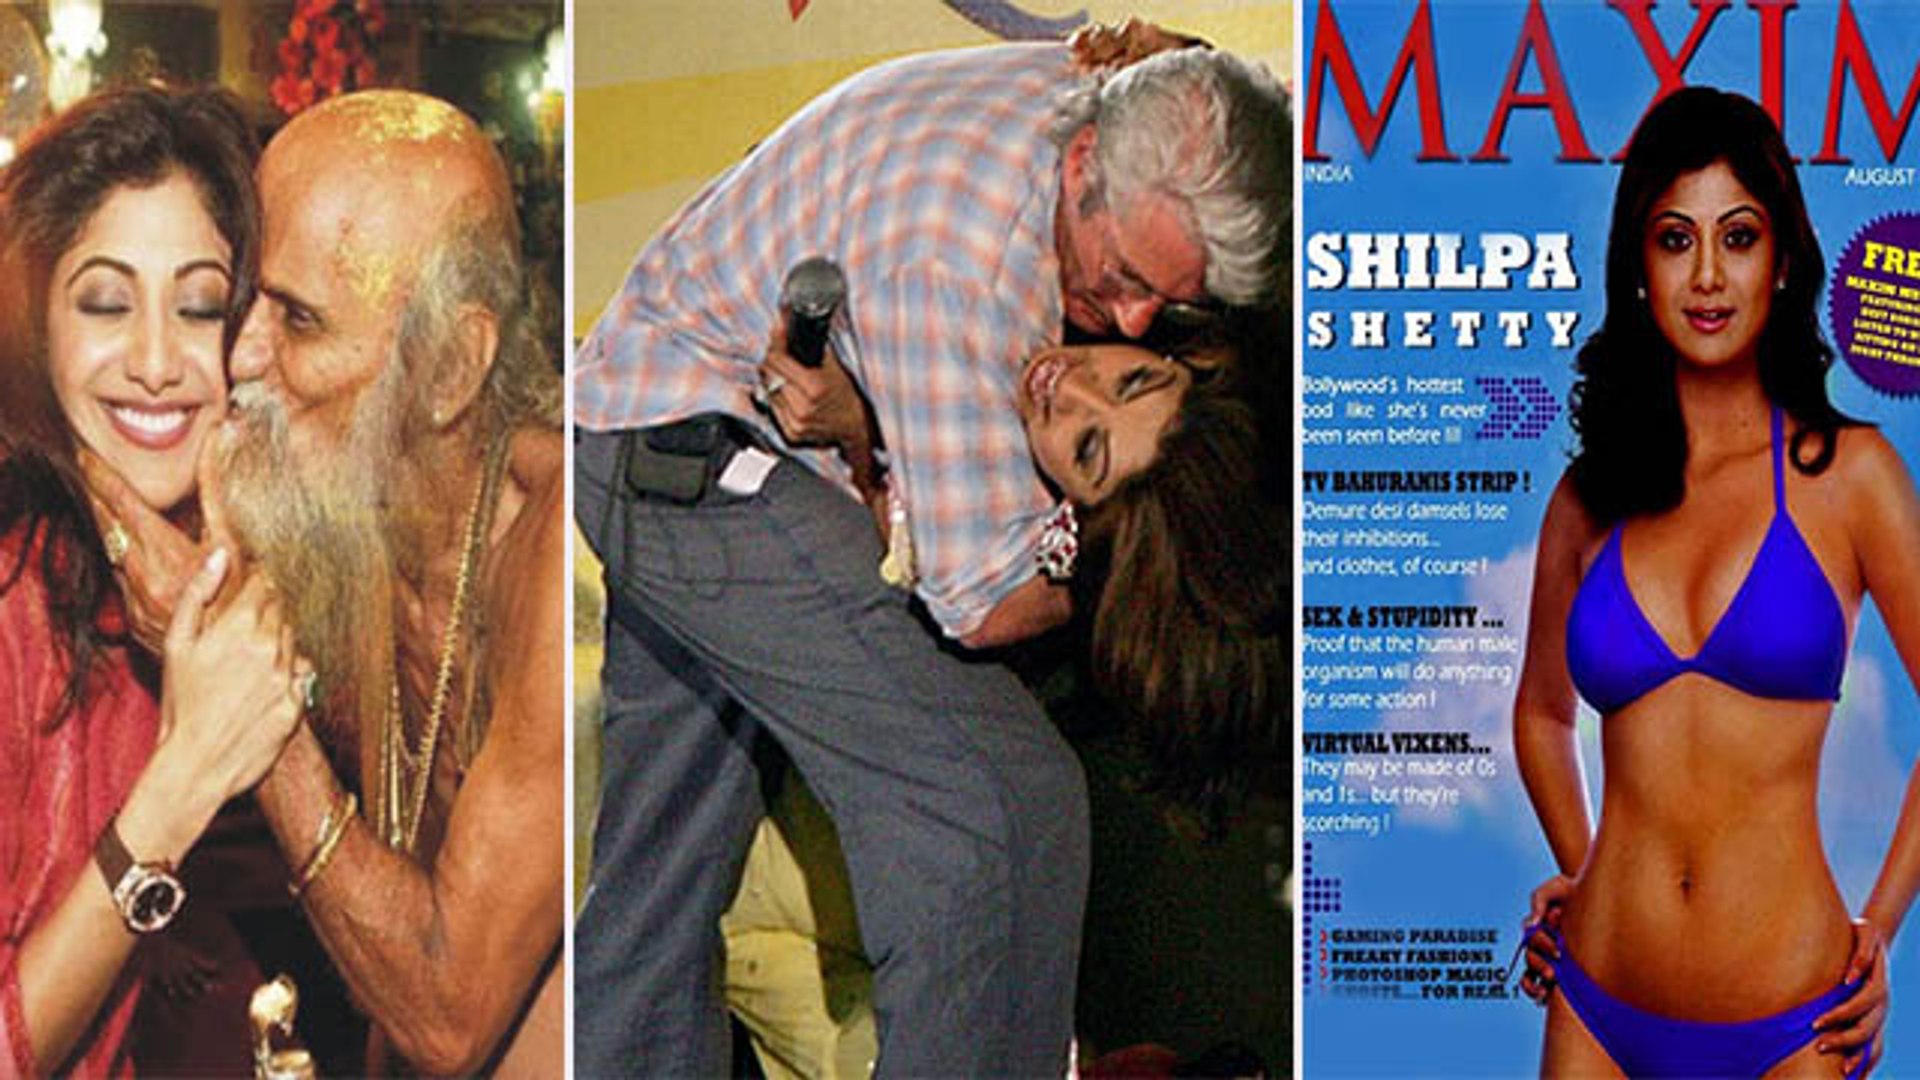 Shilpa Shetty Ki Nangi - Shilpa Shetty à¤•à¥€ 8 Controversy à¤¸à¥‡ à¤®à¤šà¤¾ à¤¥à¤¾ à¤¬à¤µà¤¾à¤², Kissing à¤¸à¥‡ Underworld  Connection à¤¤à¤•| Boldsky - video Dailymotion